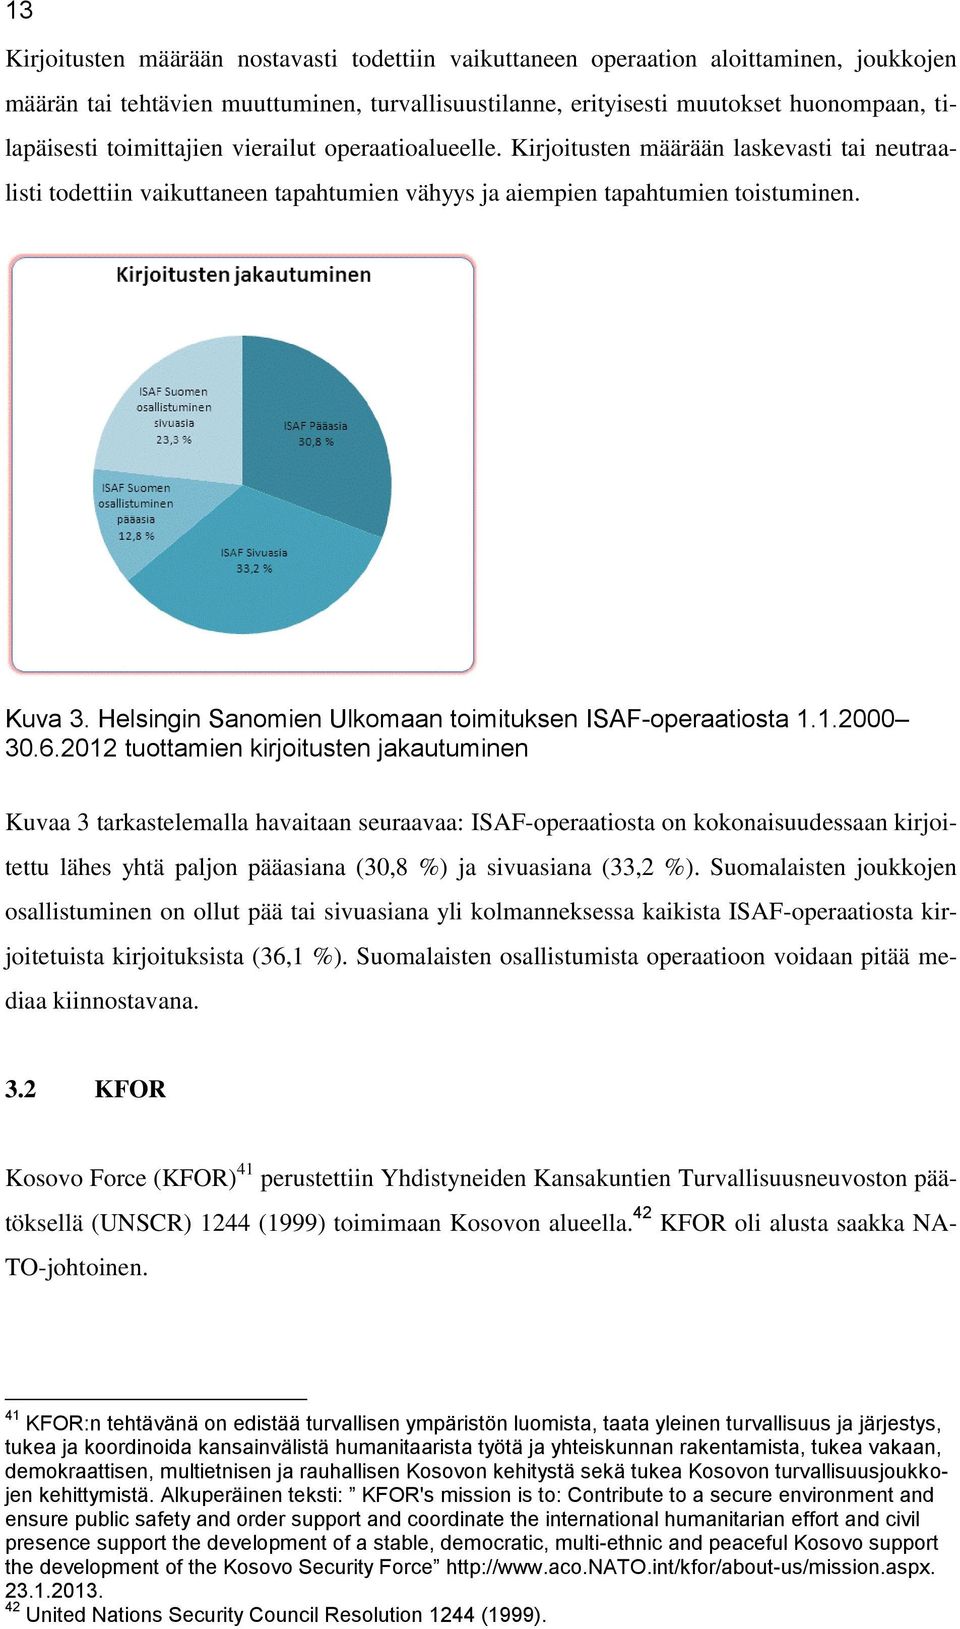 Helsingin Sanomien Ulkomaan toimituksen ISAF-operaatiosta 1.1.2000 30.6.